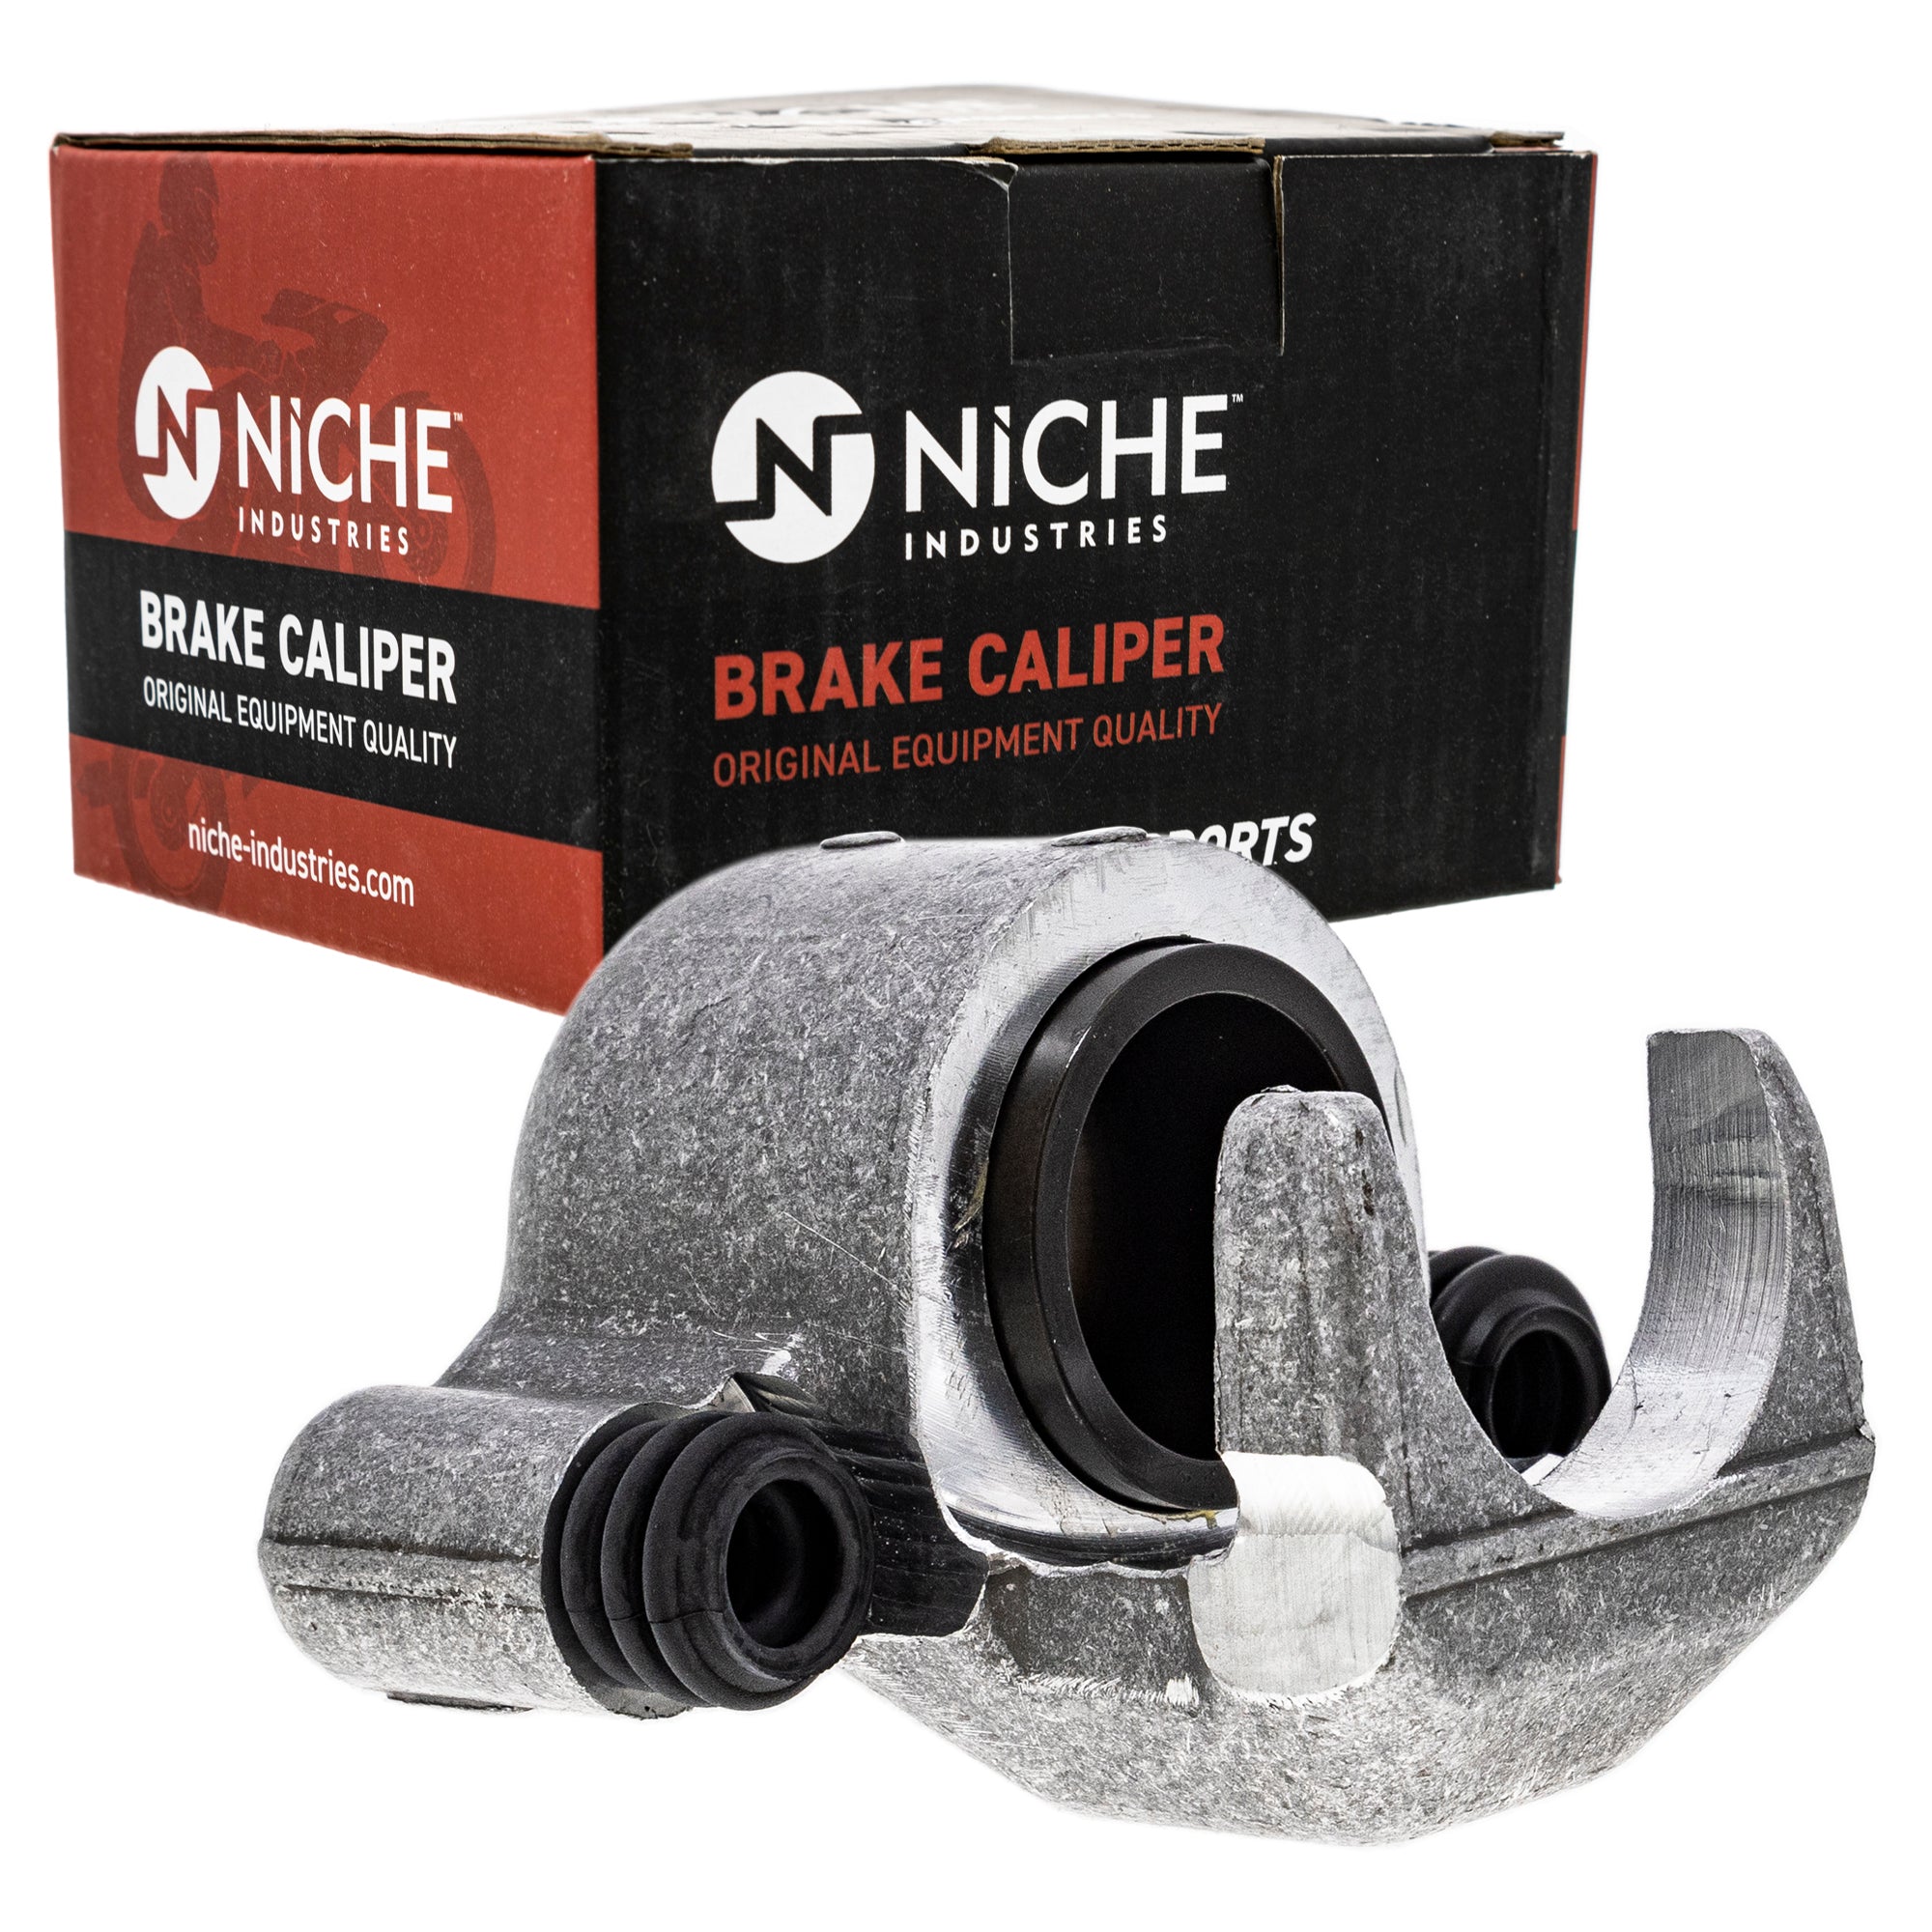 NICHE MK1001014 Brake Caliper Kit